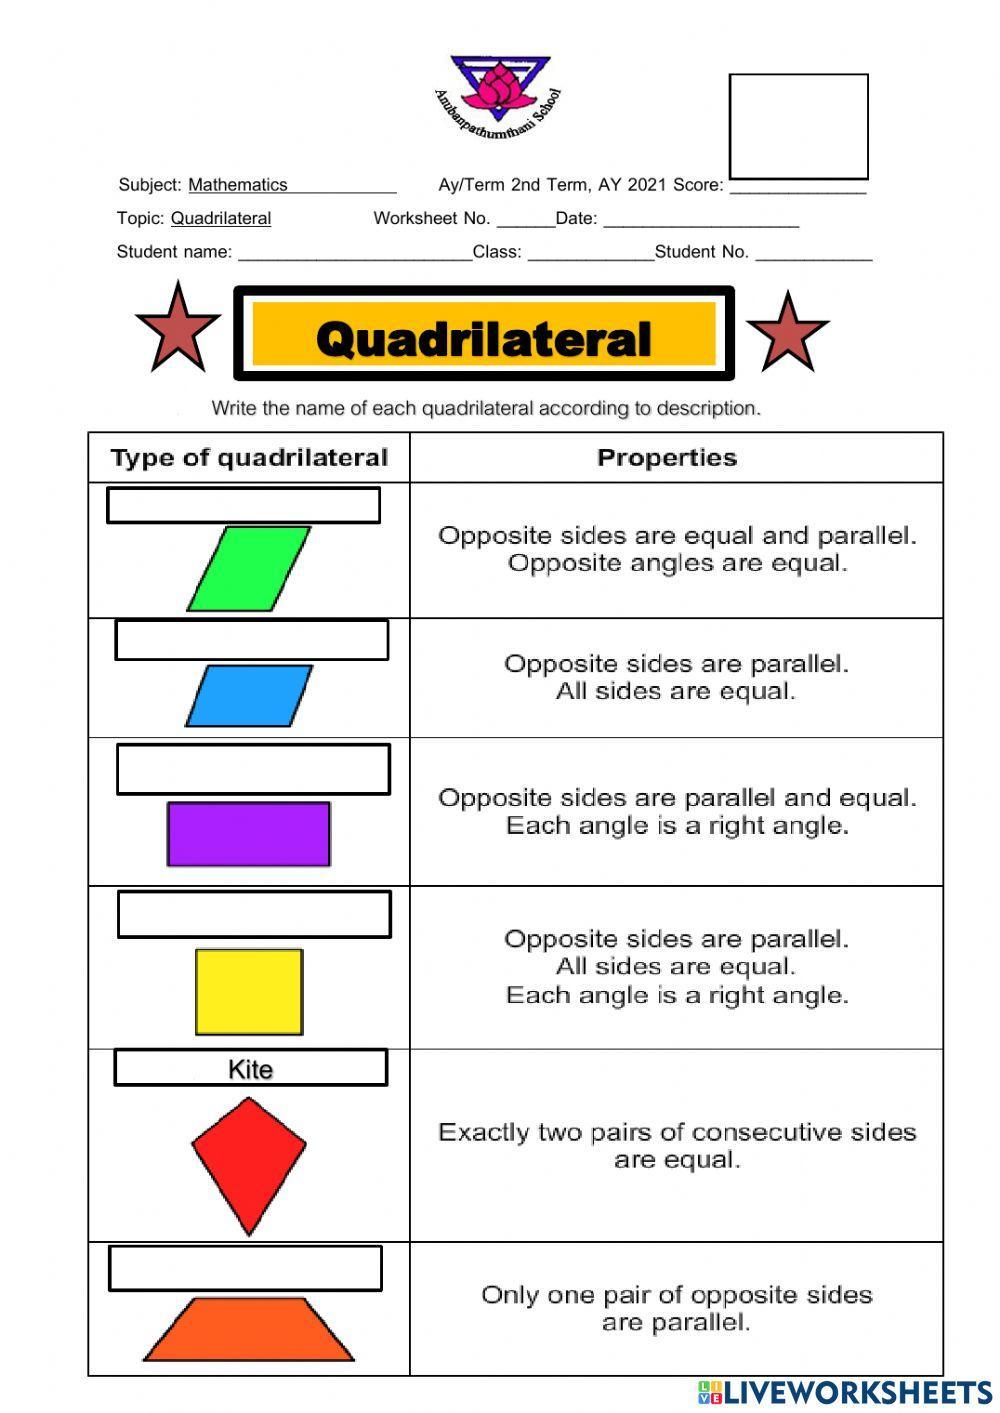 Types of quadrilaterals